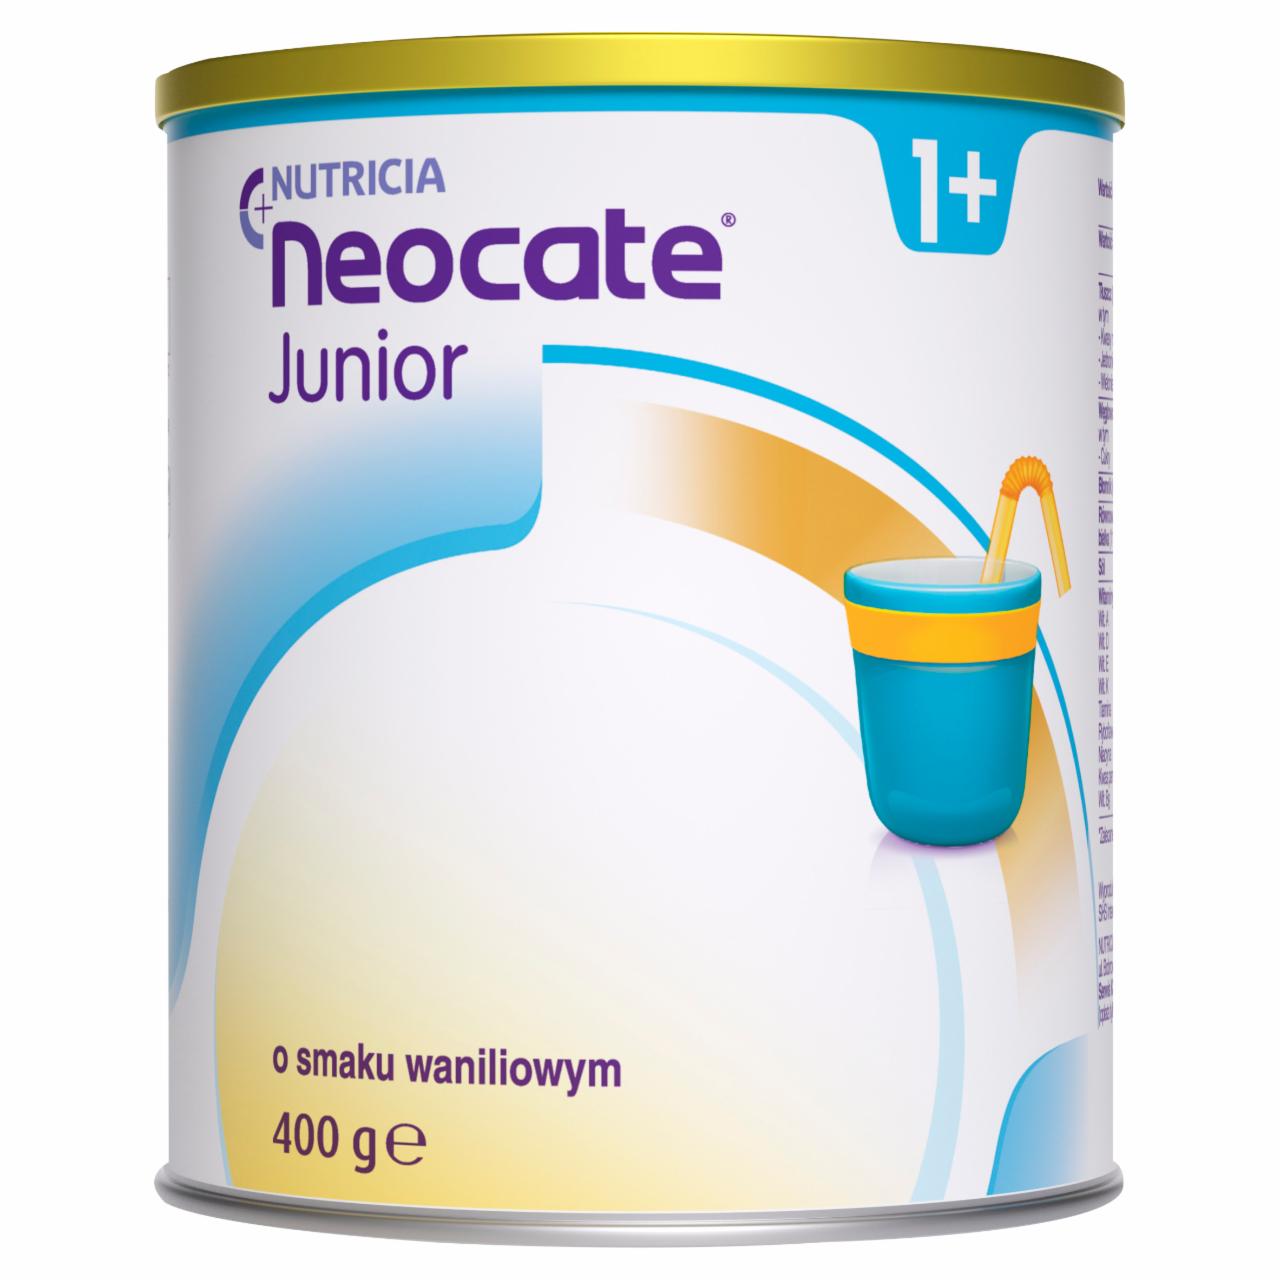 Zdjęcia - Nutricia Neocate Junior 1+ Żywność specjalnego przeznaczenia medycznego o smaku waniliowym 400 g